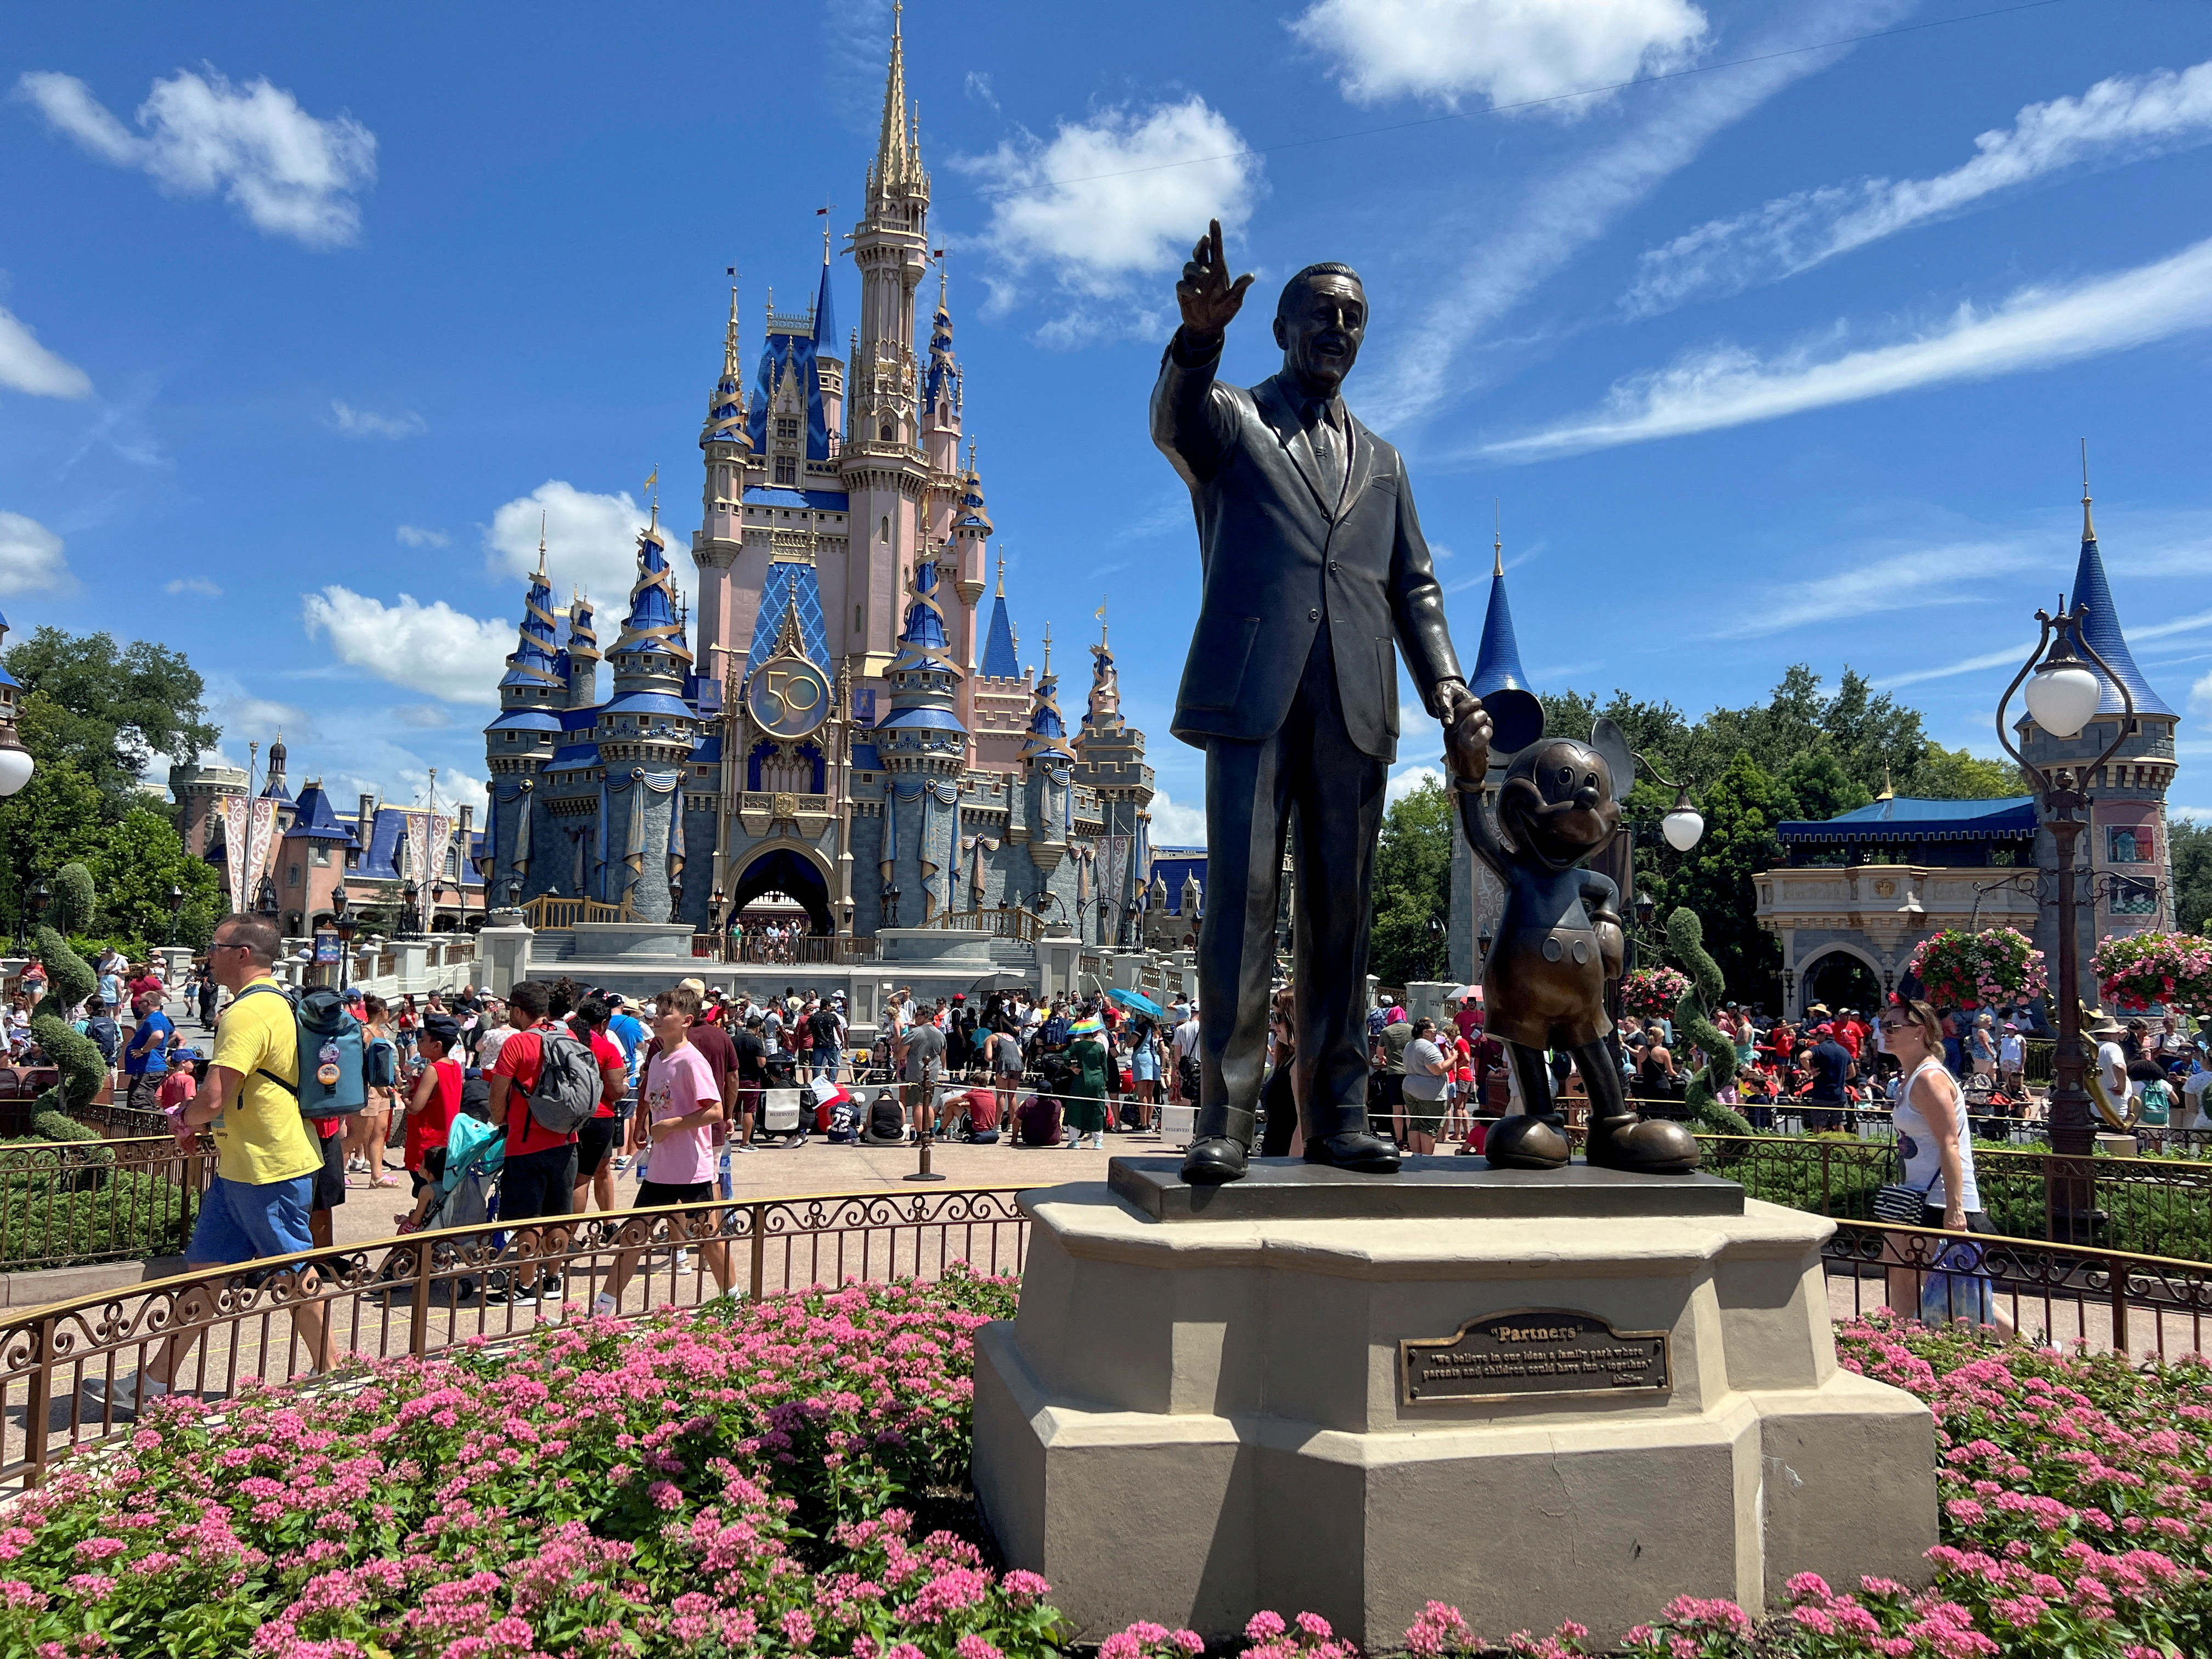 FOTO DE ARCHIVO: Personas reunidas en el parque temático Magic Kingdom antes del desfile "Festival of Fantasy" en Walt Disney World en Orlando, Florida, EE. UU., 30 de julio de 2022. REUTERS/Octavio Jones/Foto de archivo
